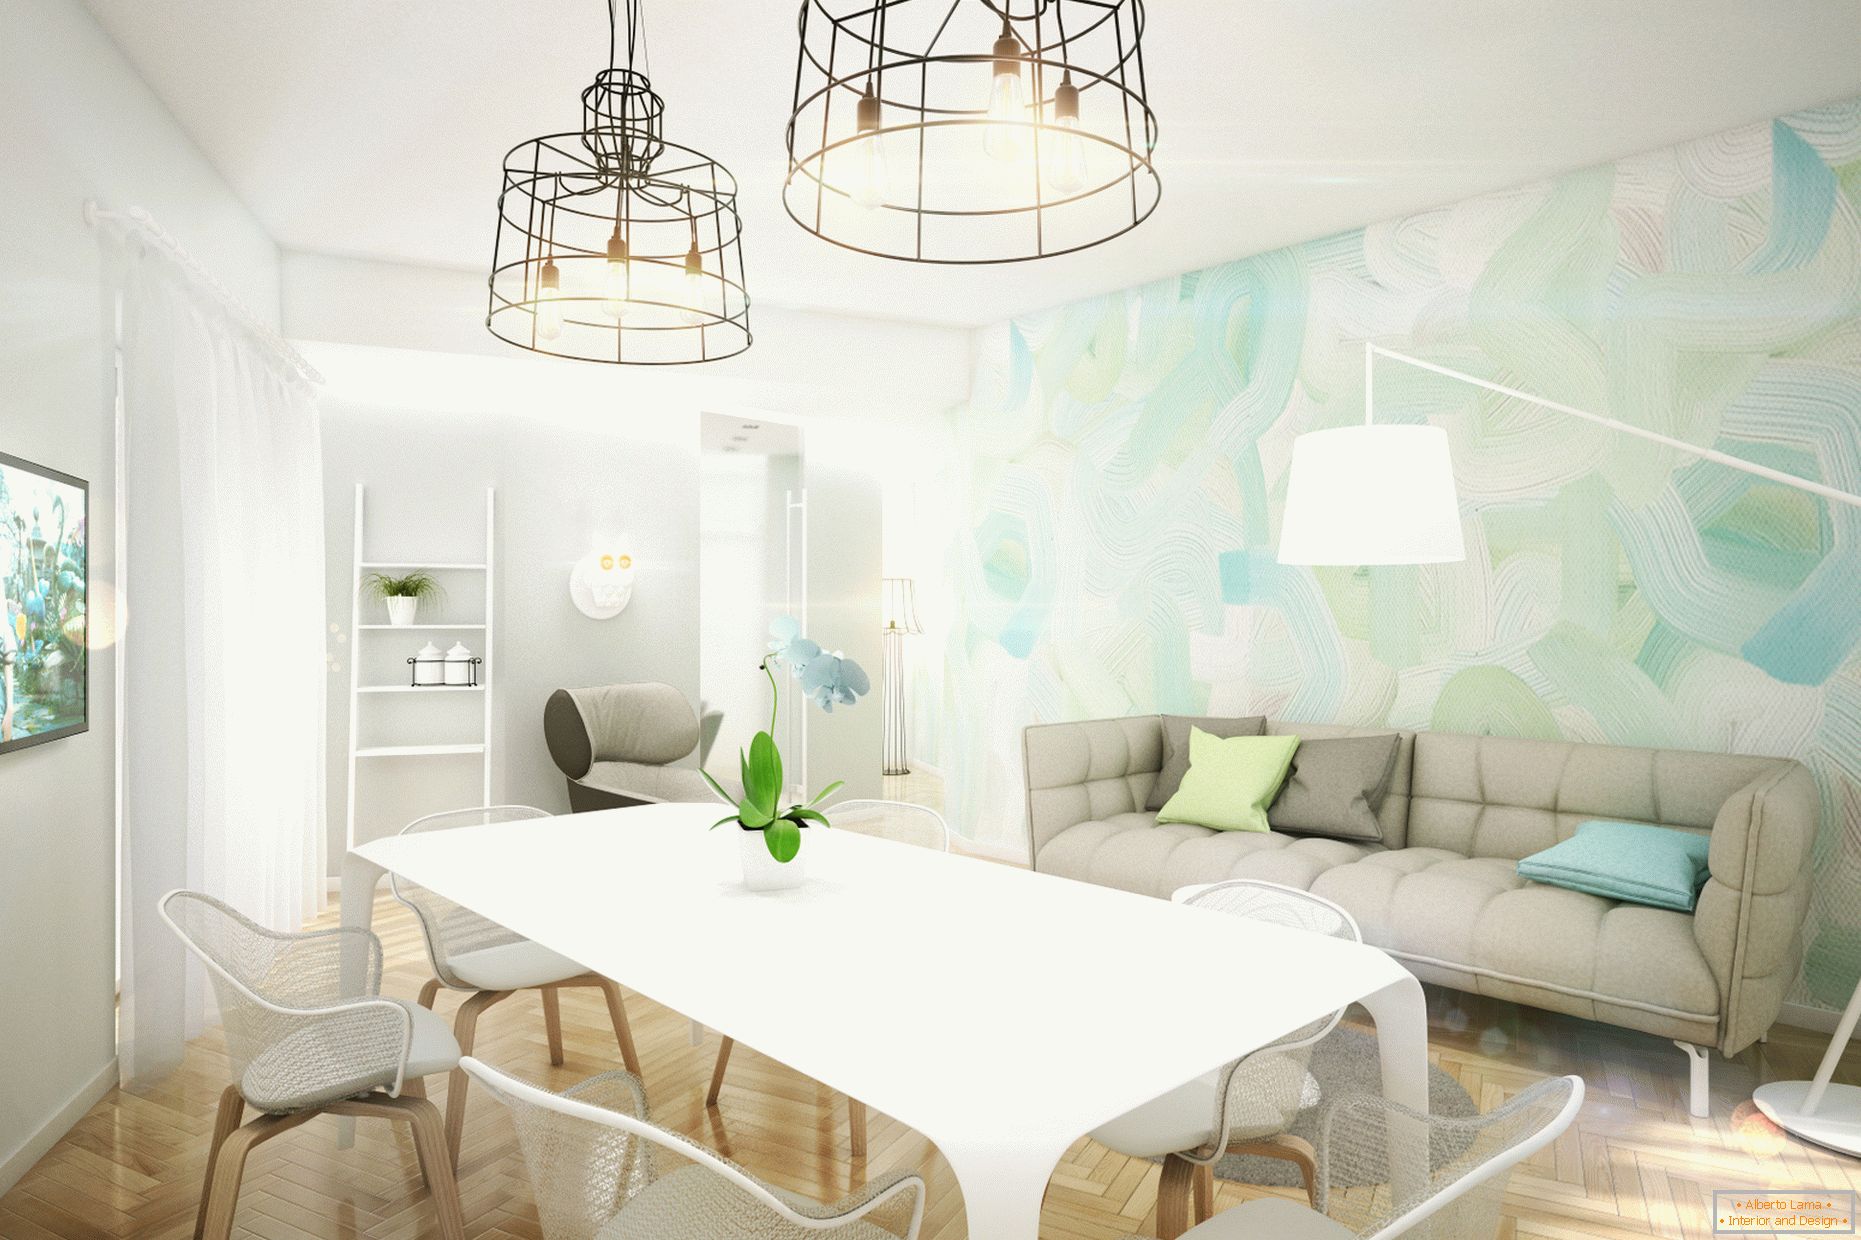 Appartement design aux couleurs pastel: salon